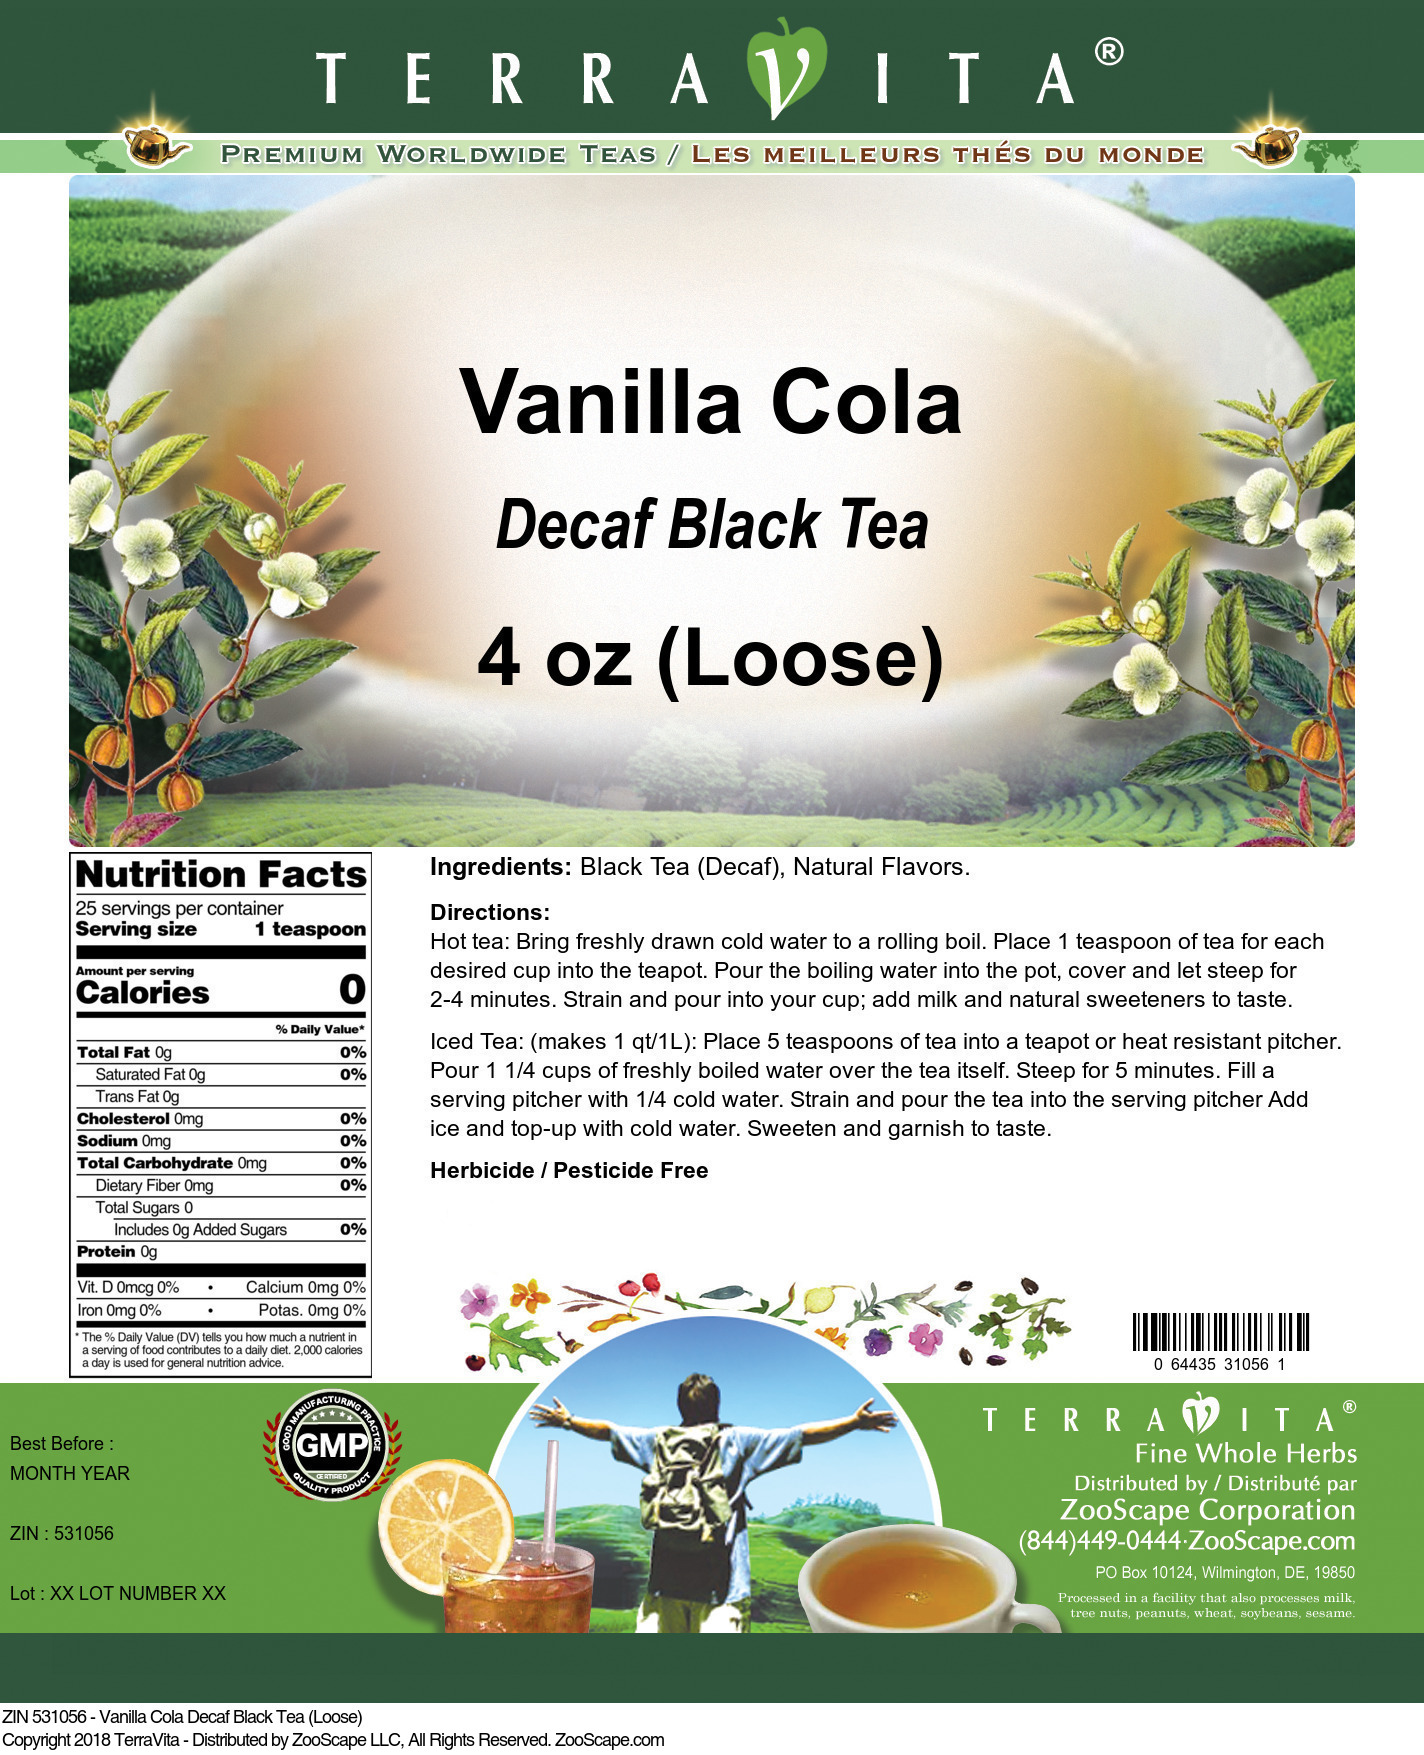 Vanilla Cola Decaf Black Tea (Loose) - Label